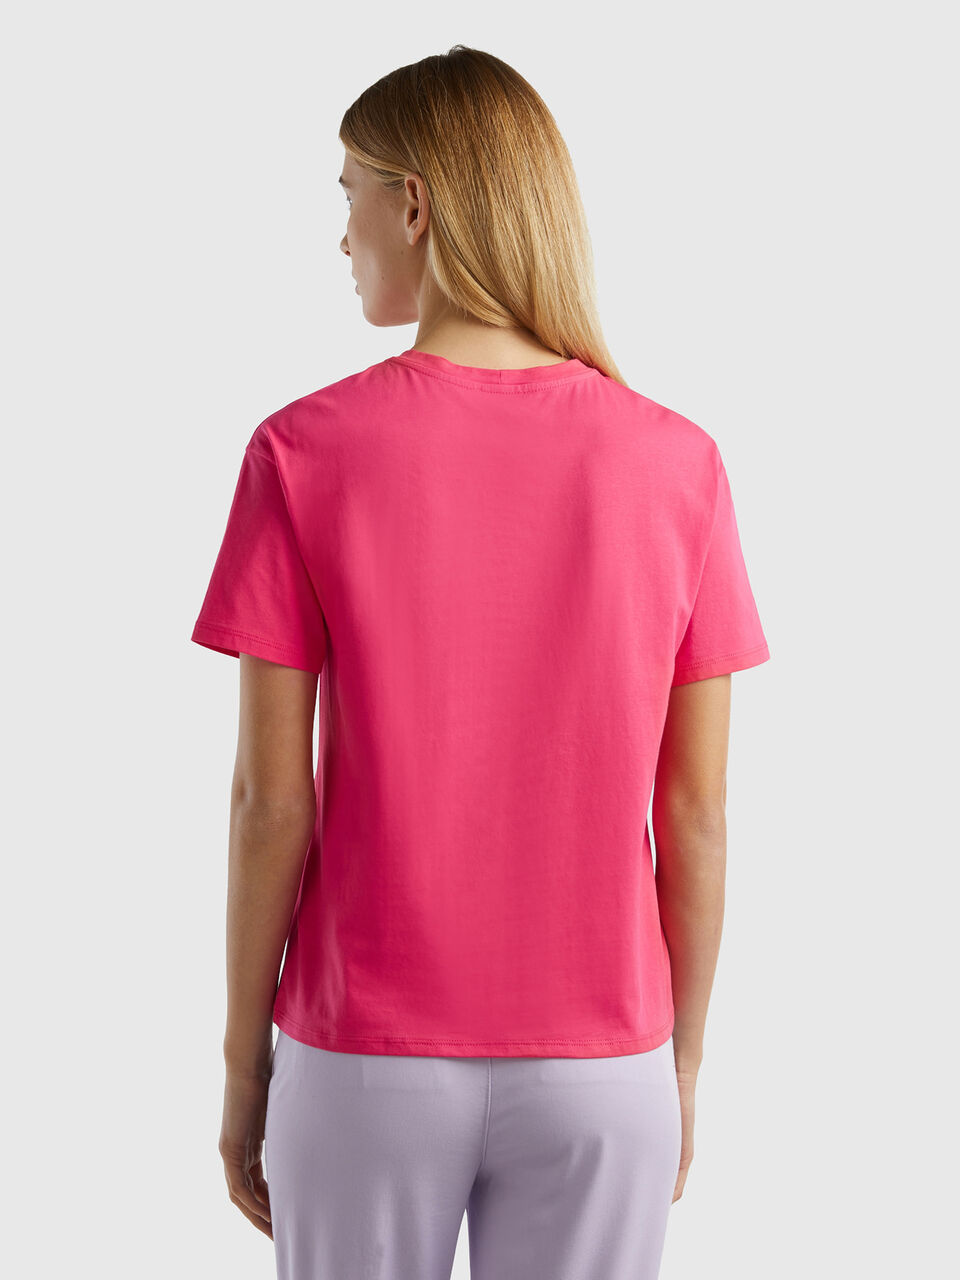 Short sleeve 100% cotton t-shirt - Benetton Fuchsia 